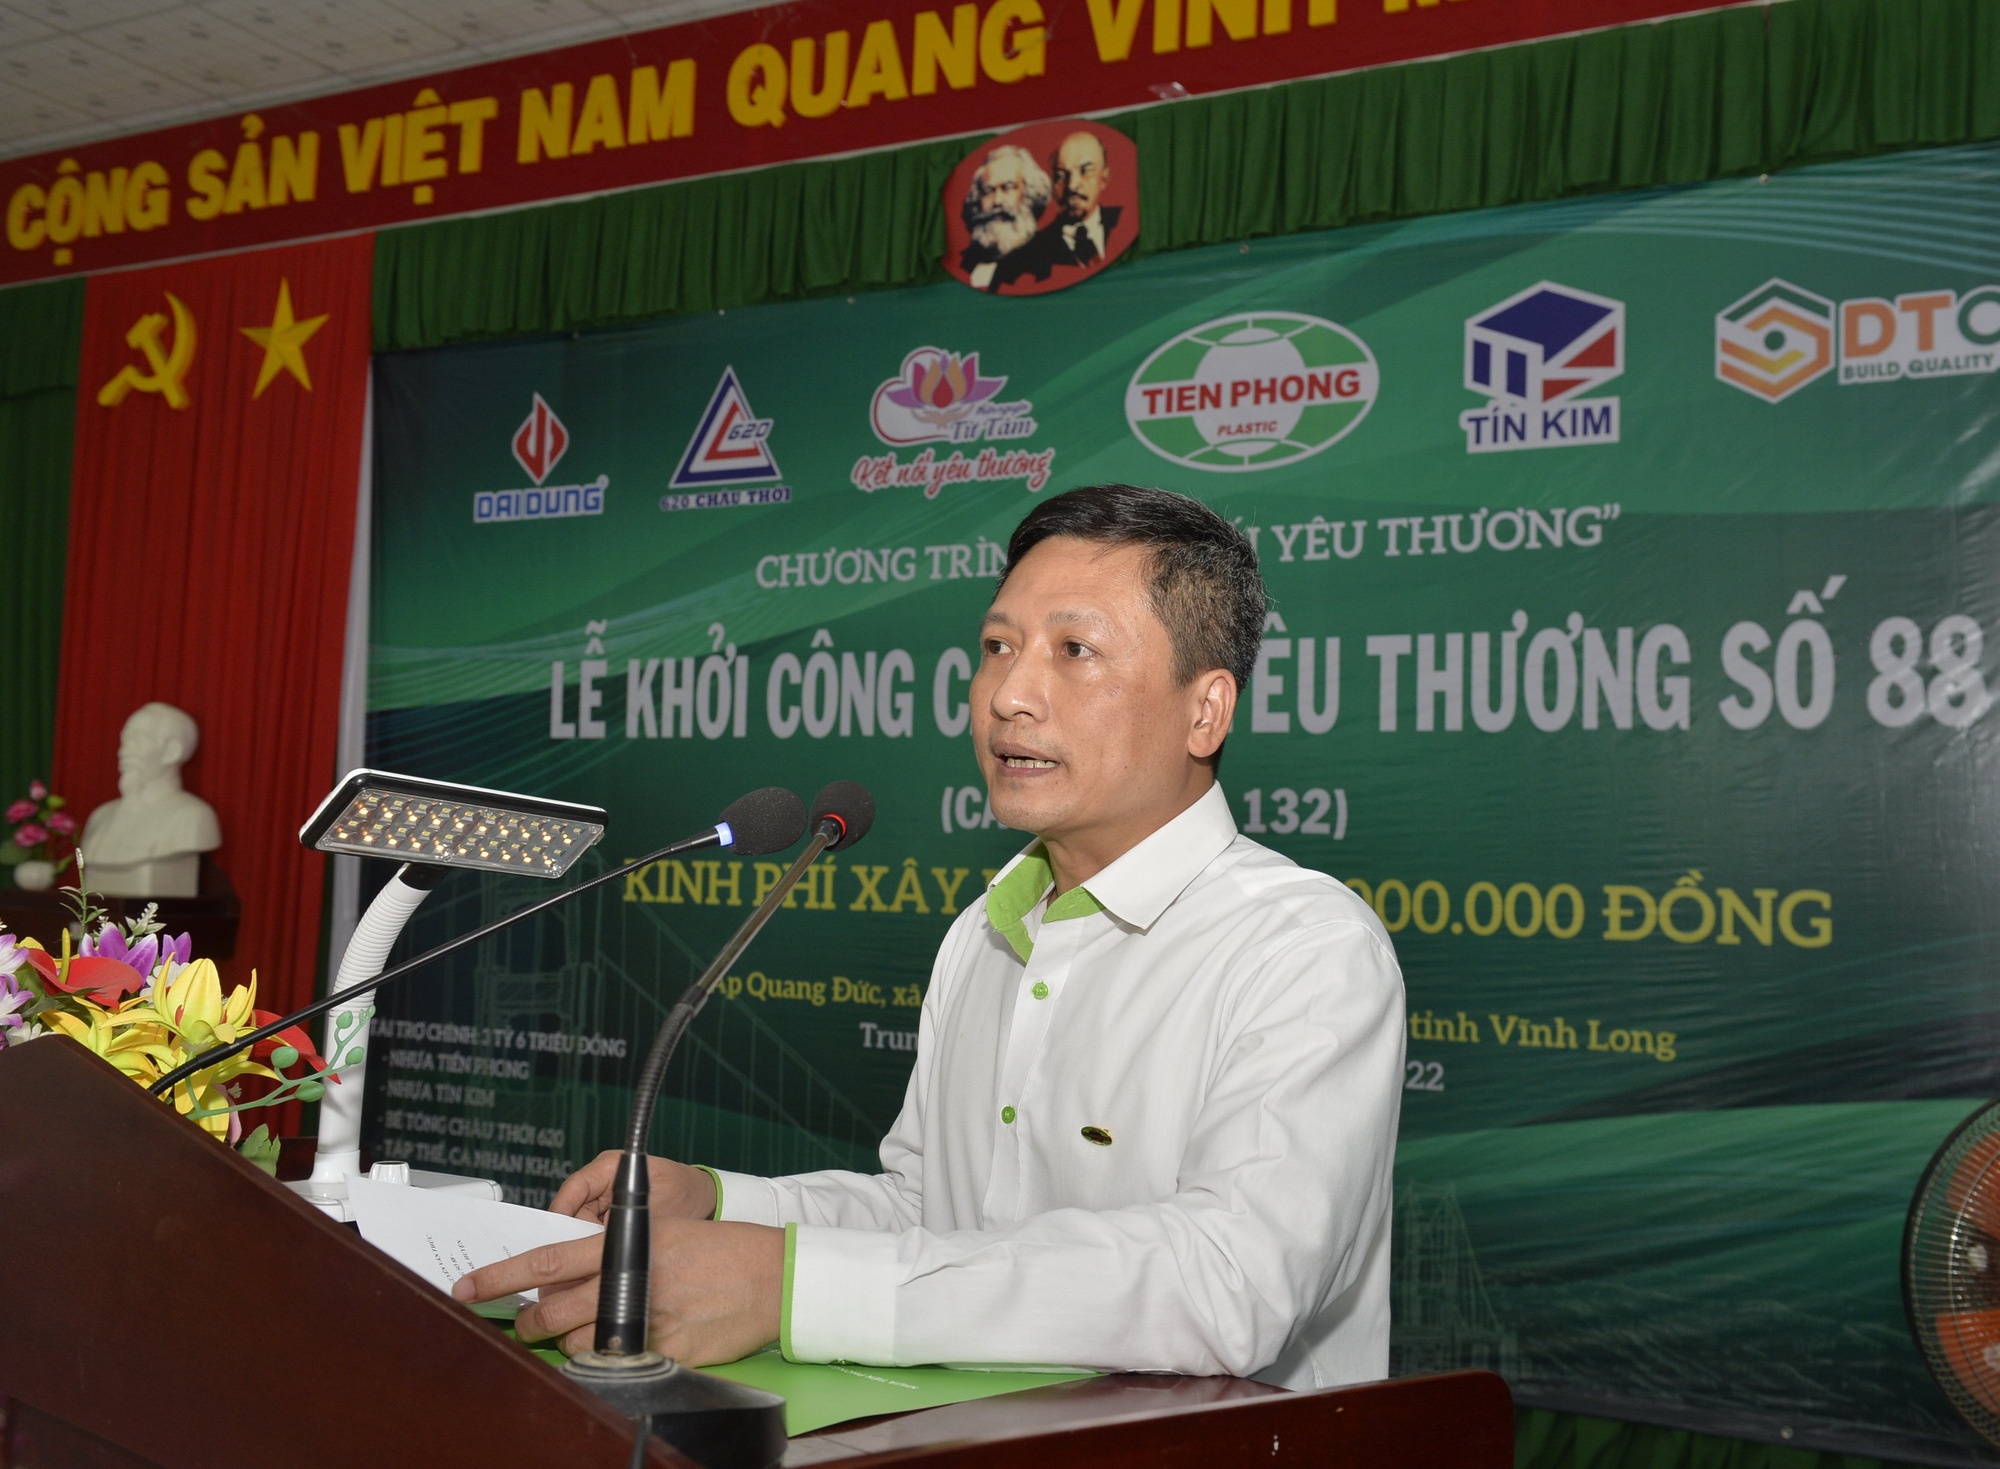 kỷ niệm 100 năm ngày sinh của Cố Thủ tướng Võ Văn Kiệt: Nhựa Tiền Phong khởi công Cầu nối yêu thương số 88  - Ảnh 2.